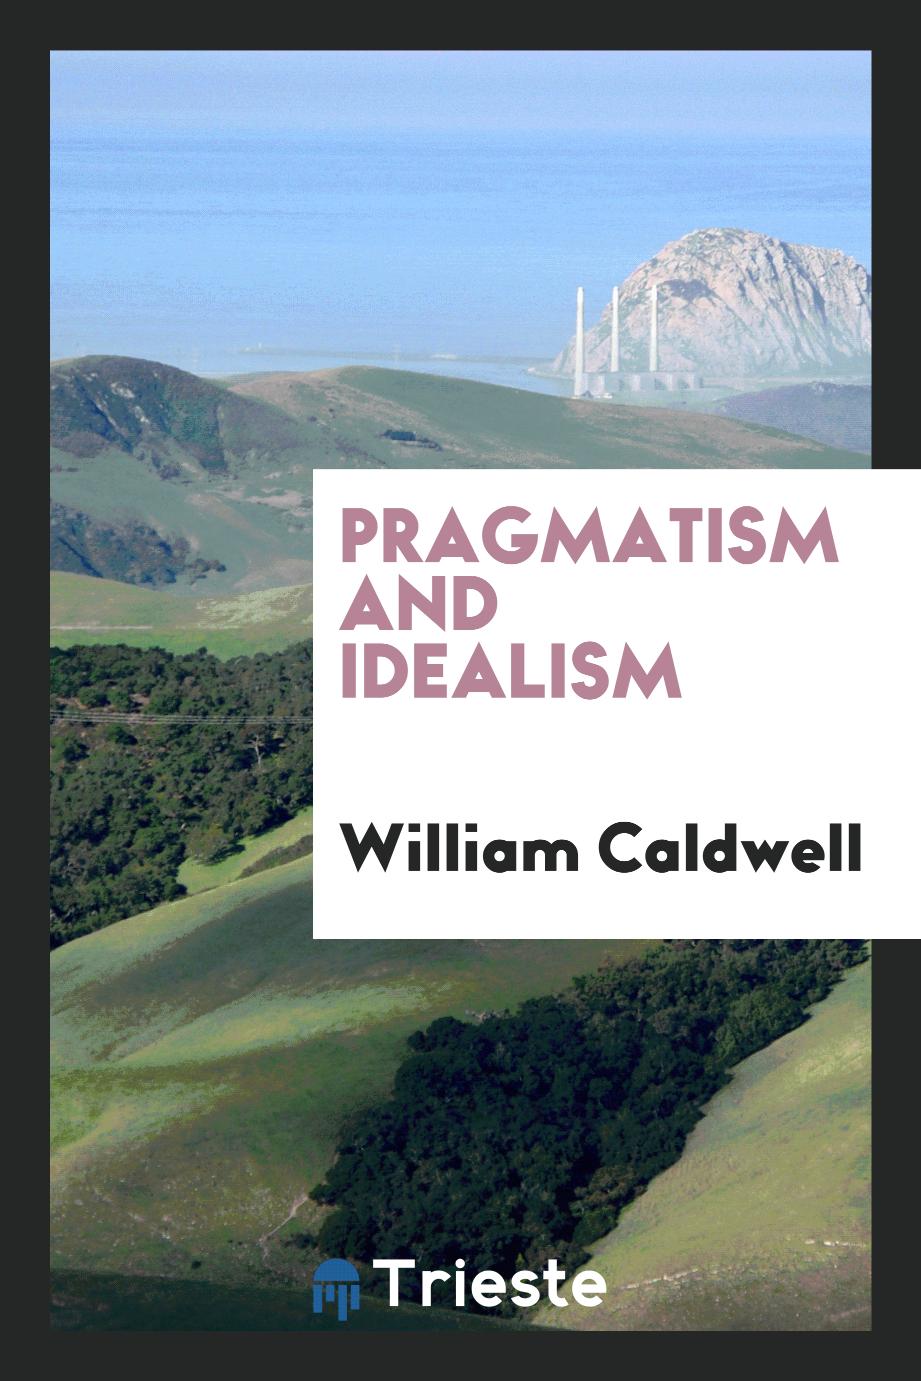 Pragmatism and idealism